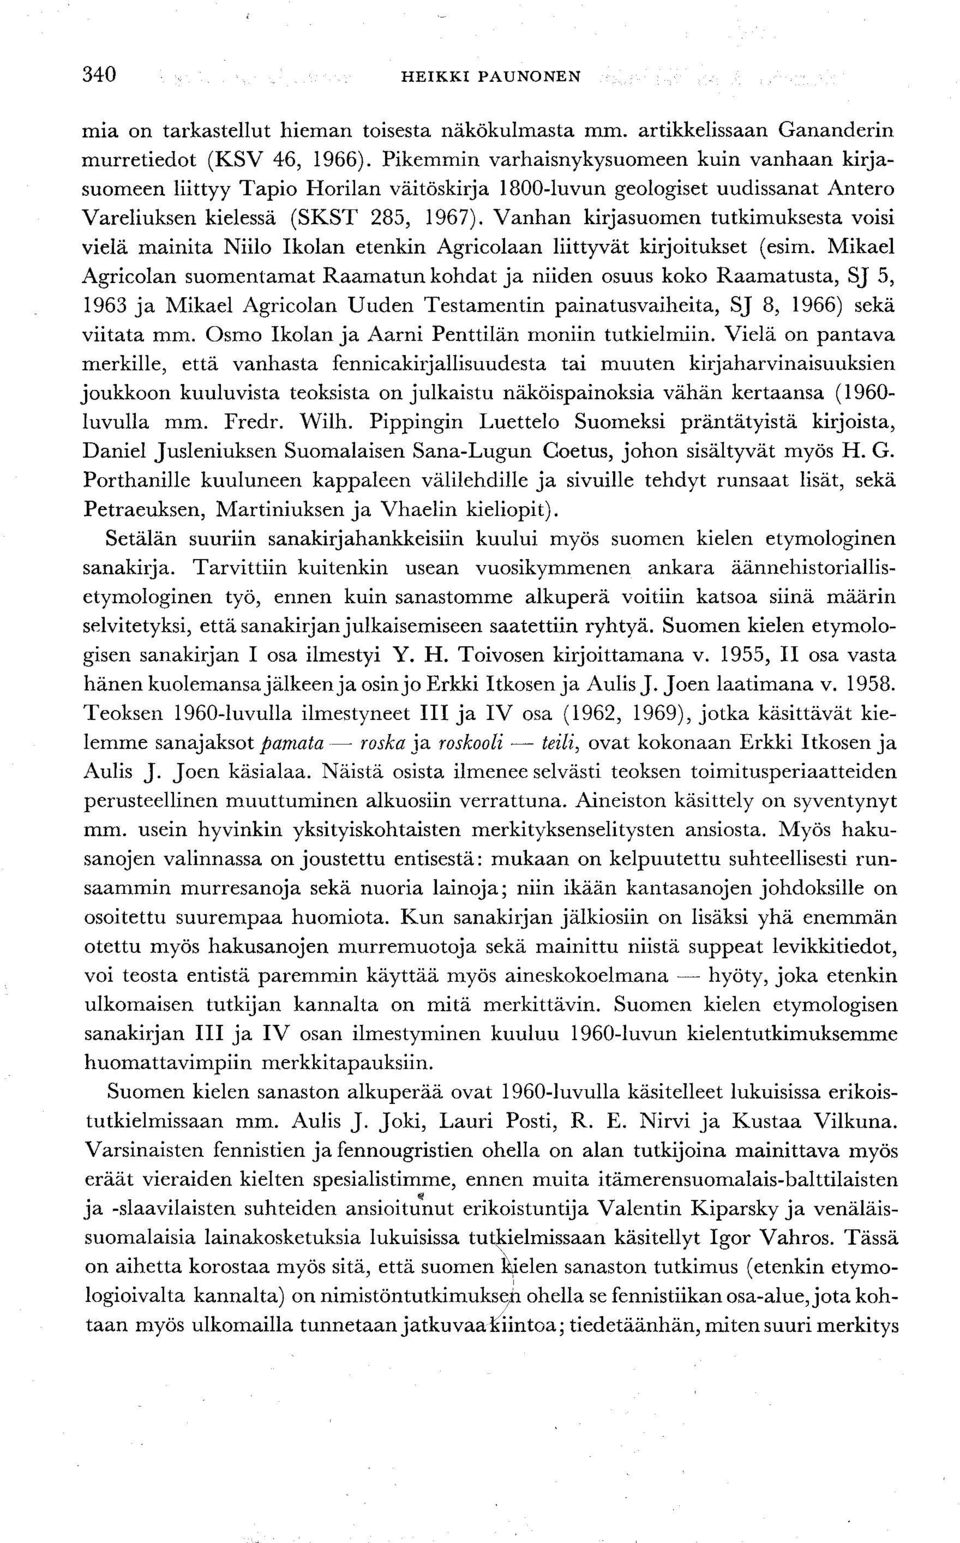 Vanhan kirjasuomen tutkimuksesta voisi vielä mainita Niilo Ikolan etenkin Agricolaan liittyvät kirjoitukset (esim.